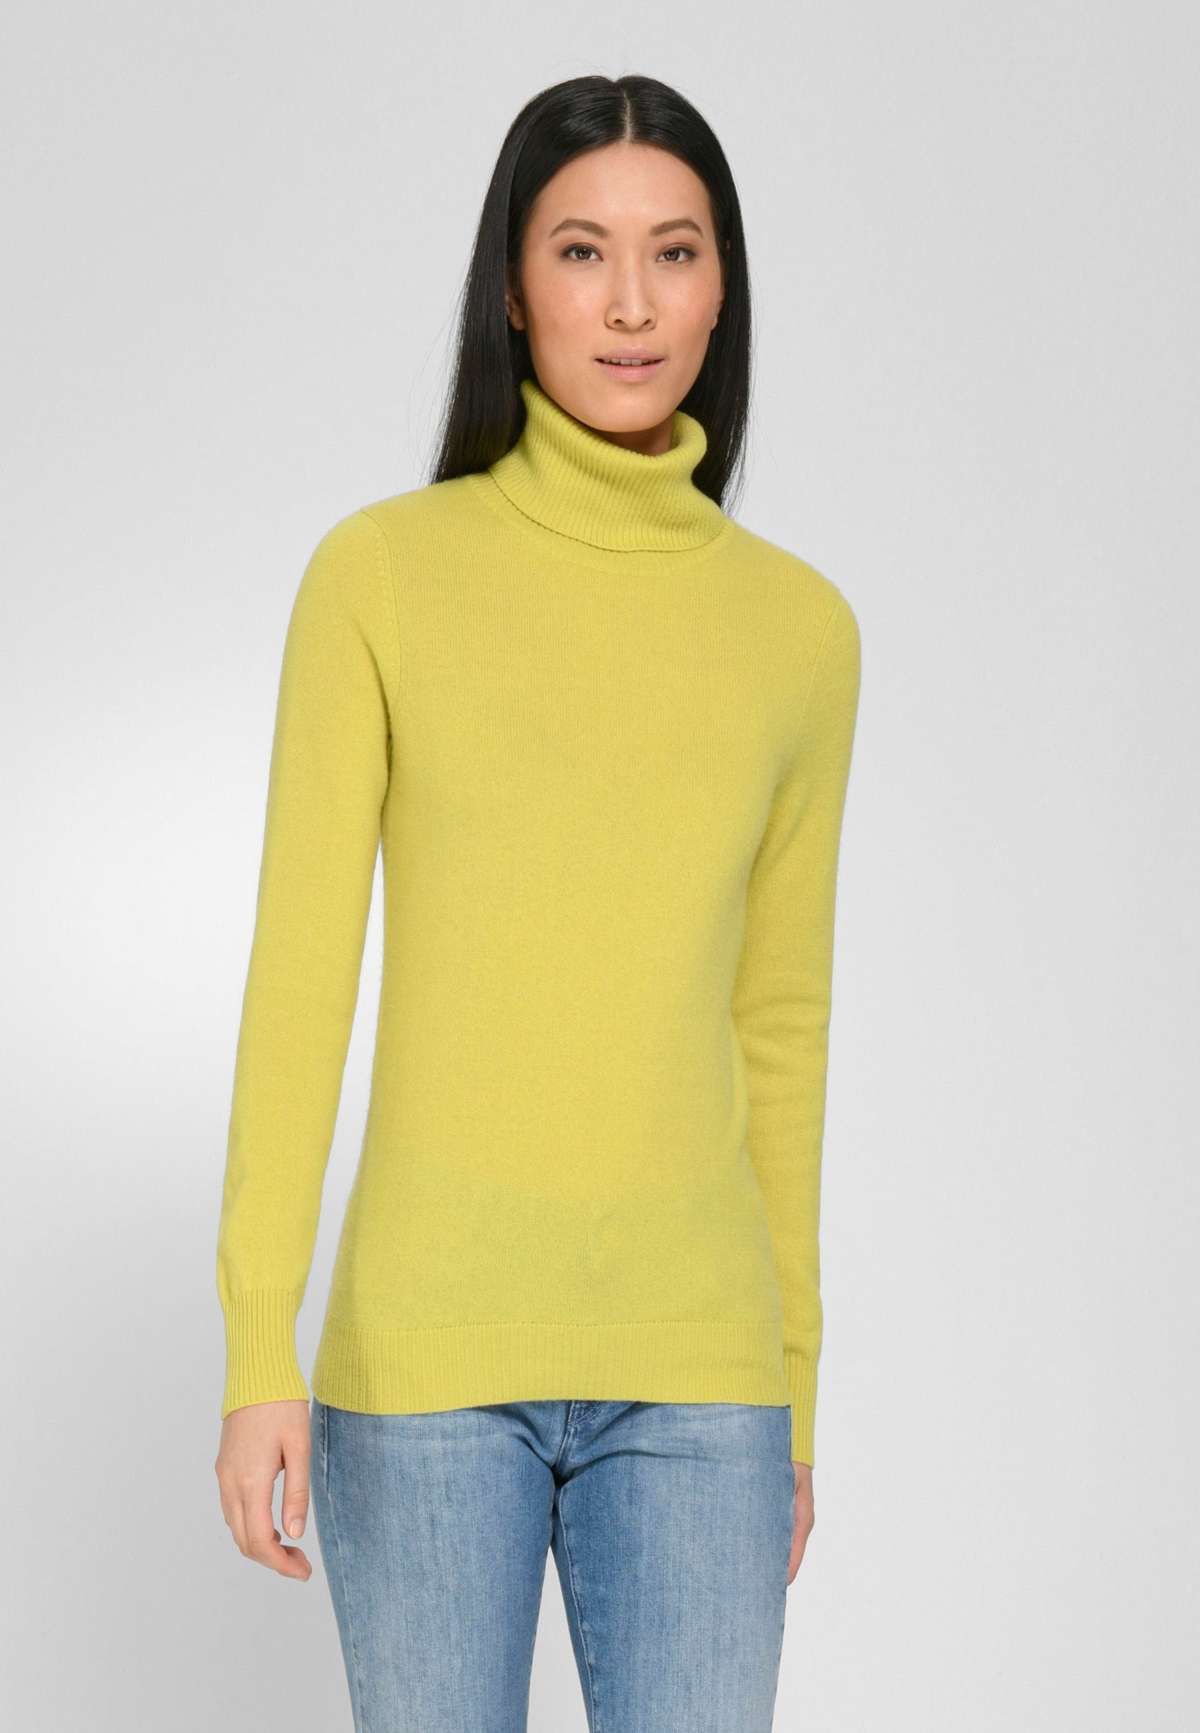 Кашемировый свитер с воротником современного дизайна.